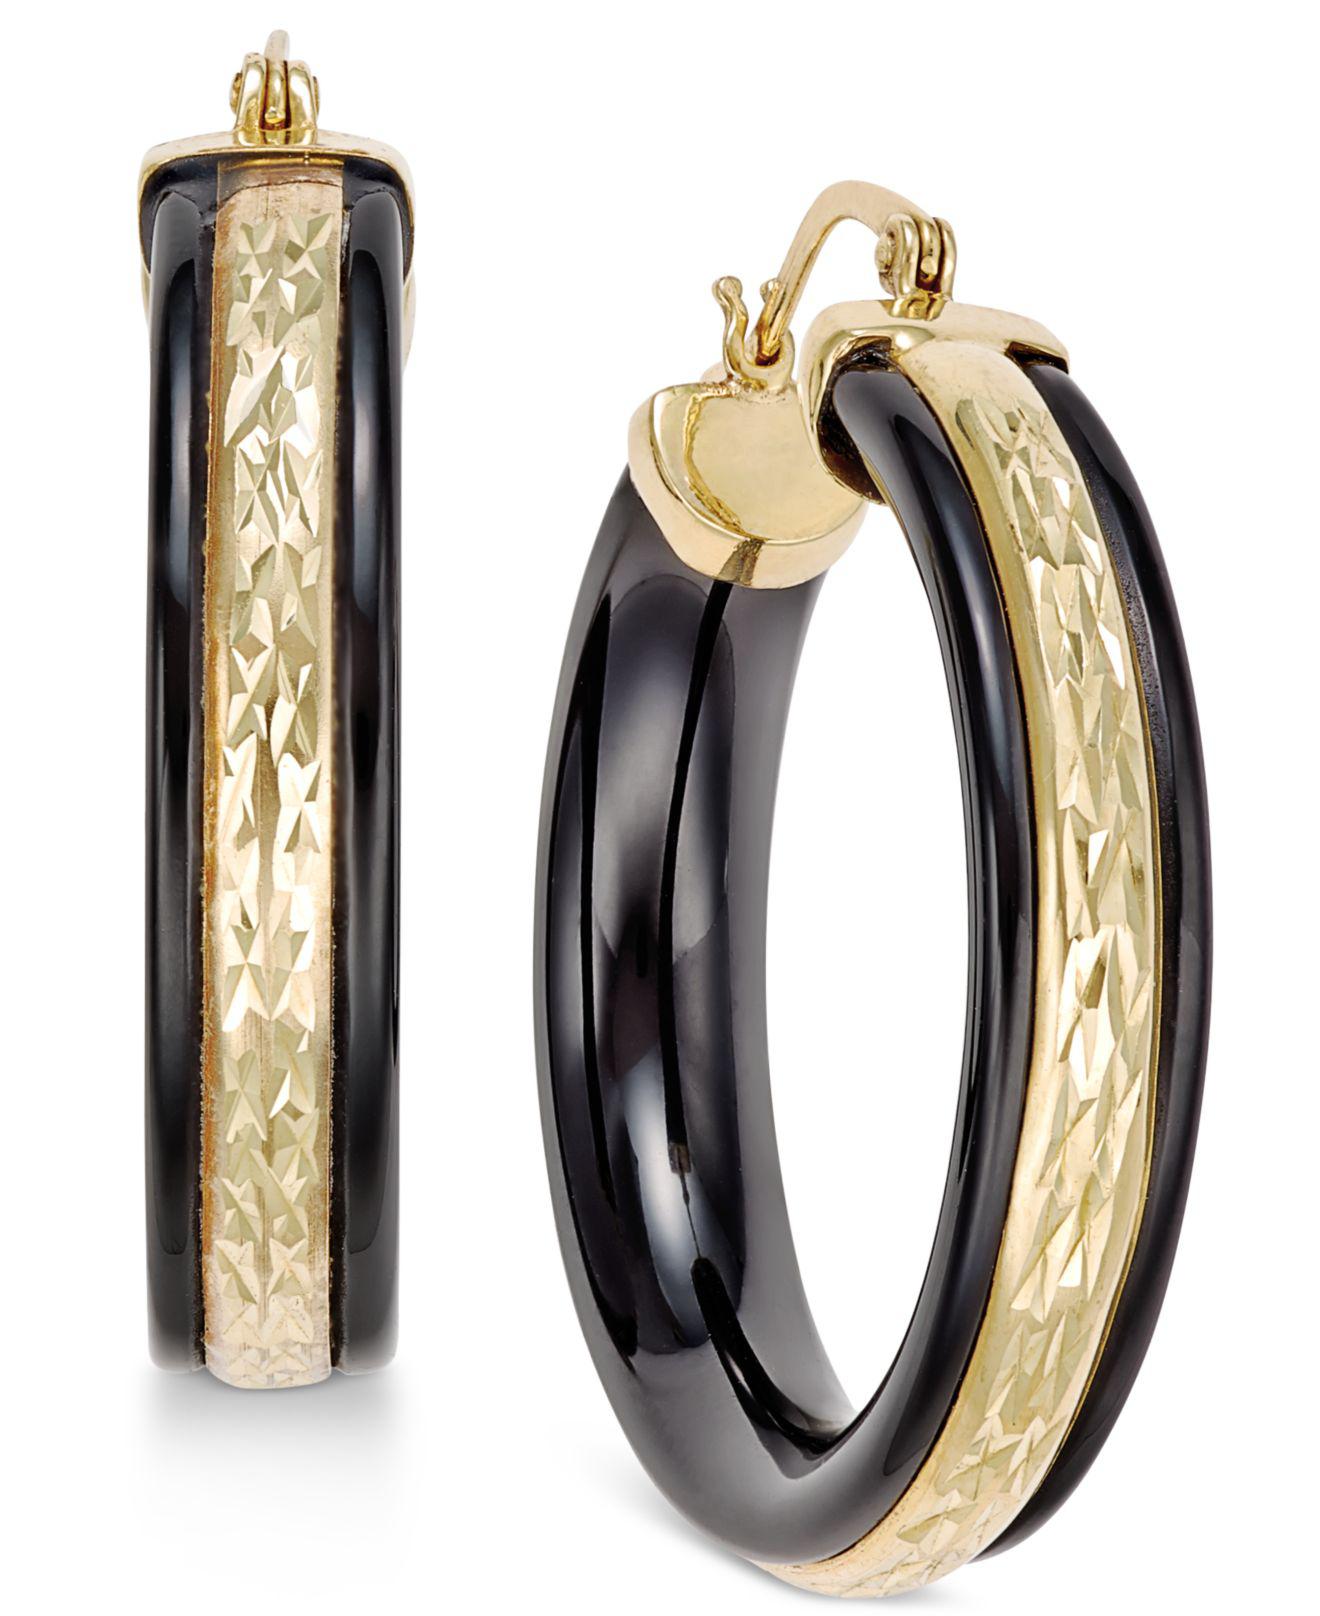 Lyst - Macy'S Onyx Patterned Hoop Earrings (26 Ct. T.w.) In 14k Gold in ...